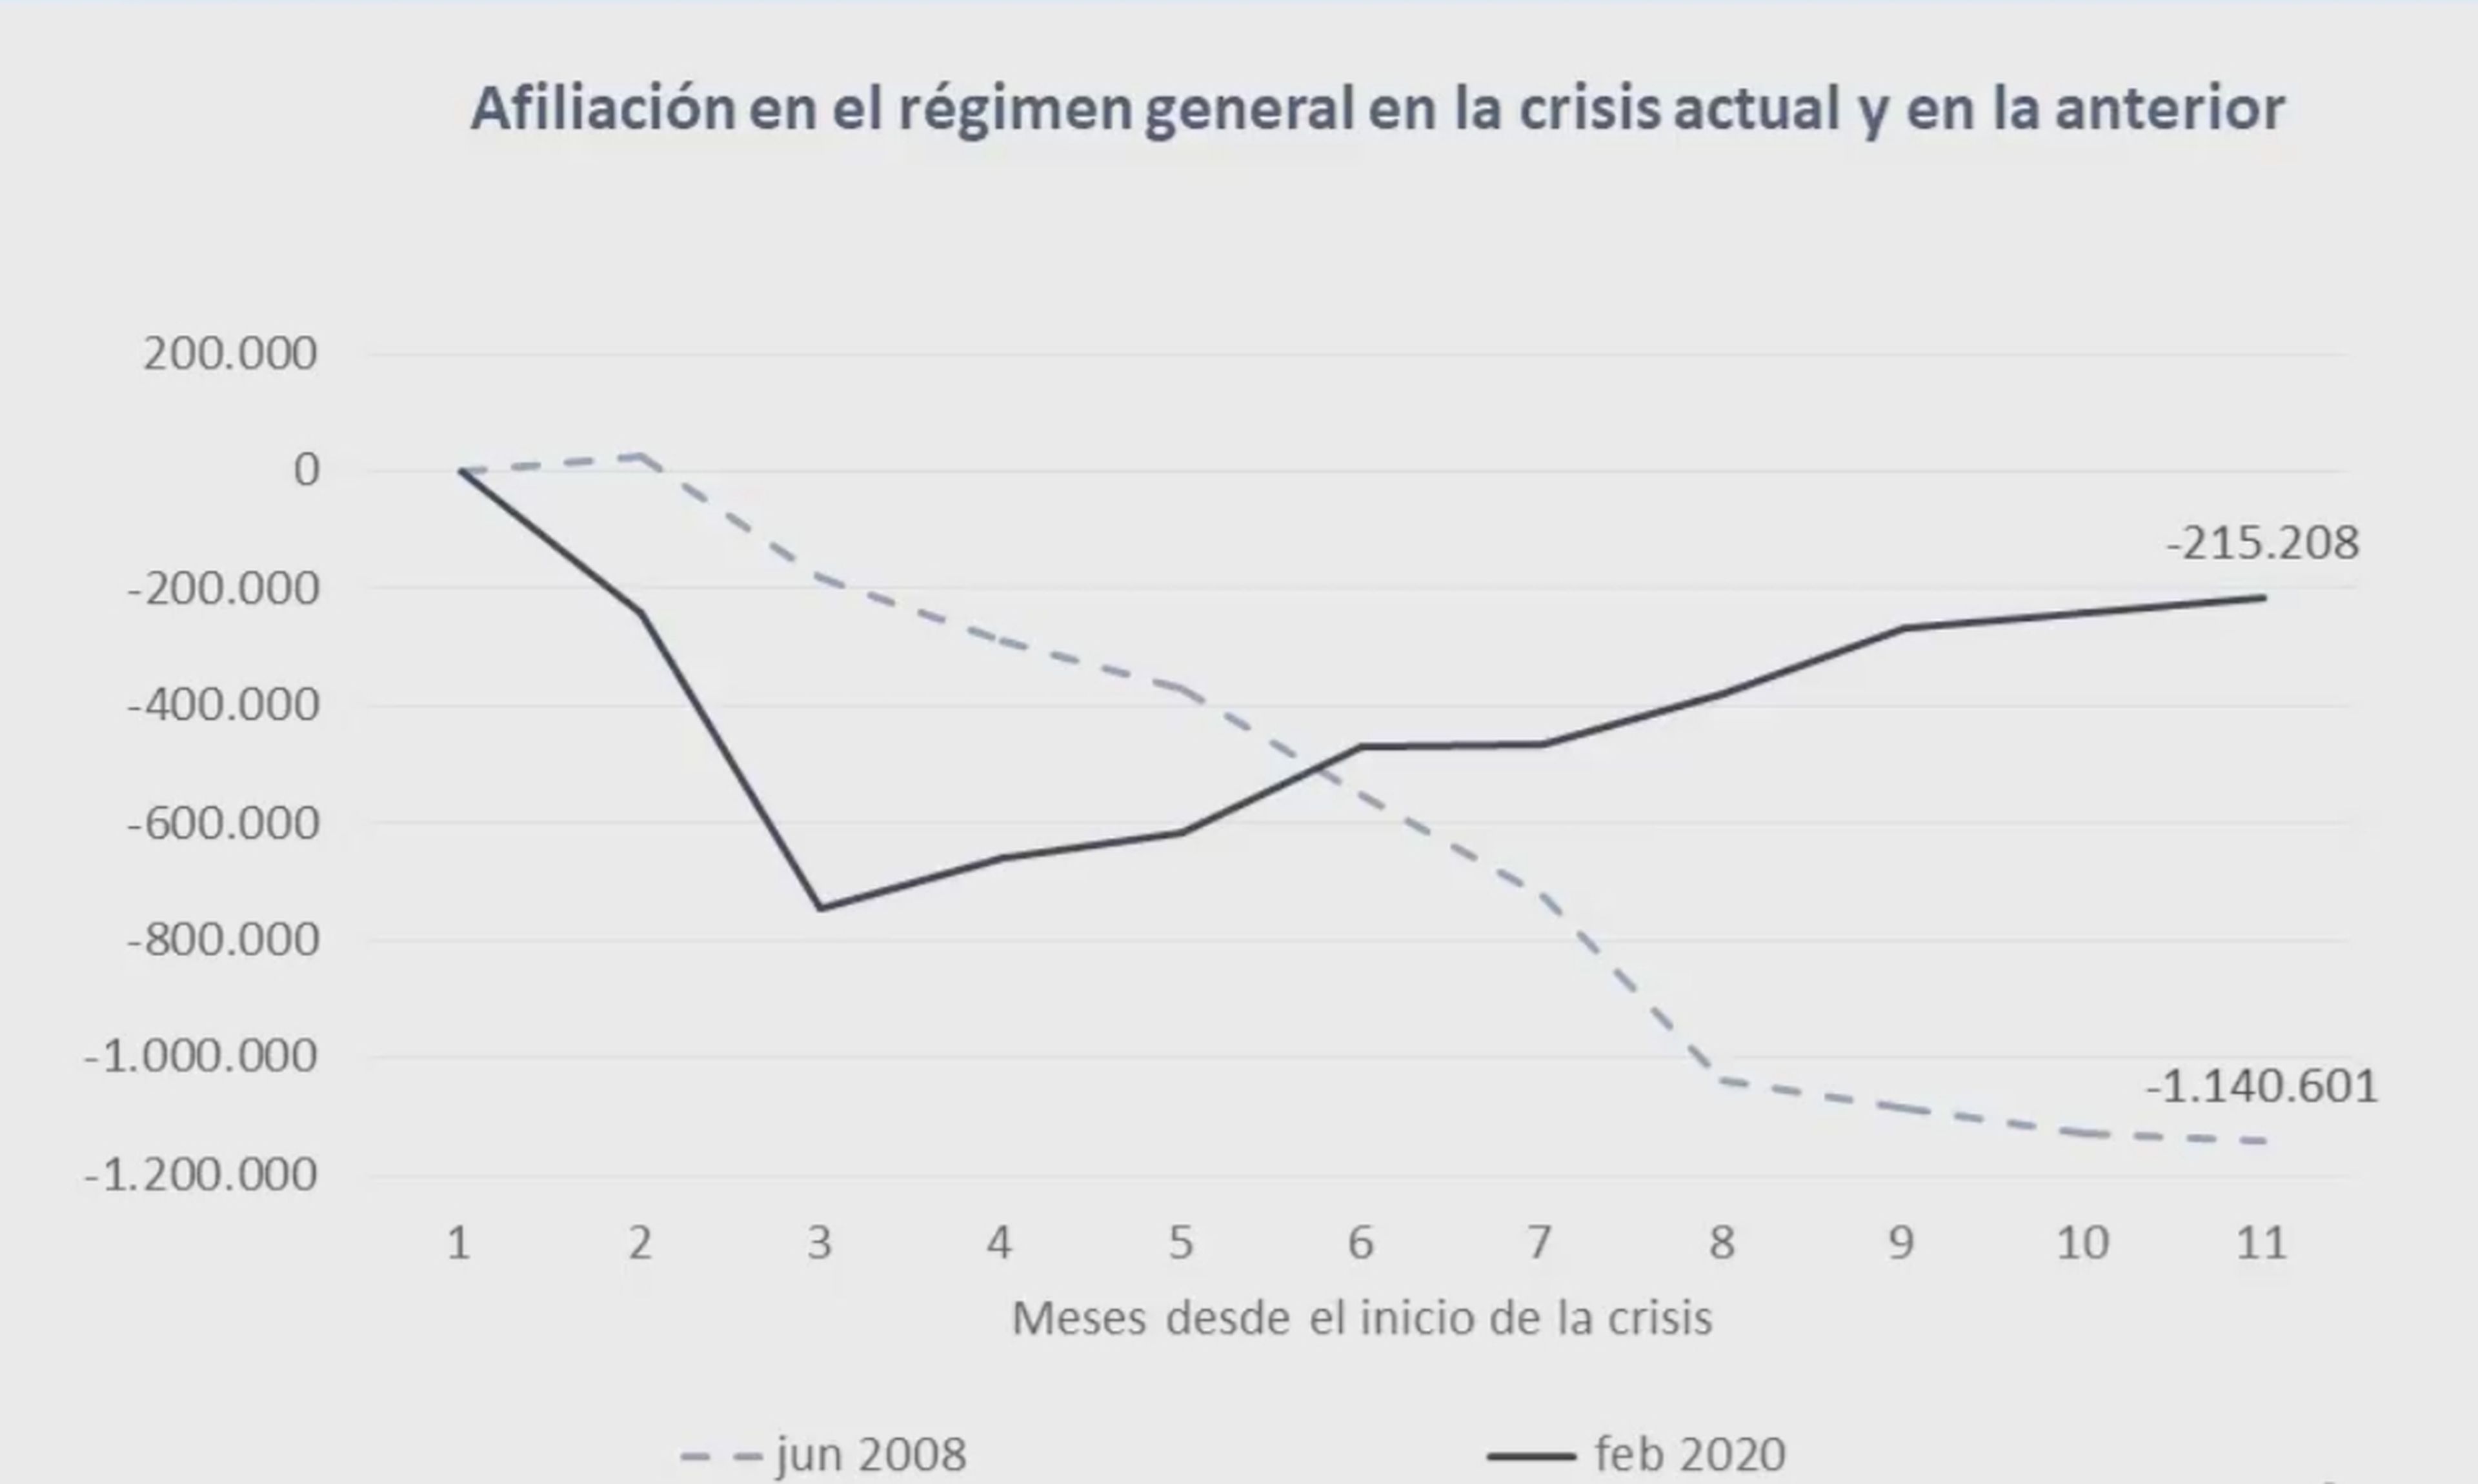 Evolución de la afiliación a la Seguridad Social durante los primeros 11 meses de la actual crisis y la anterior